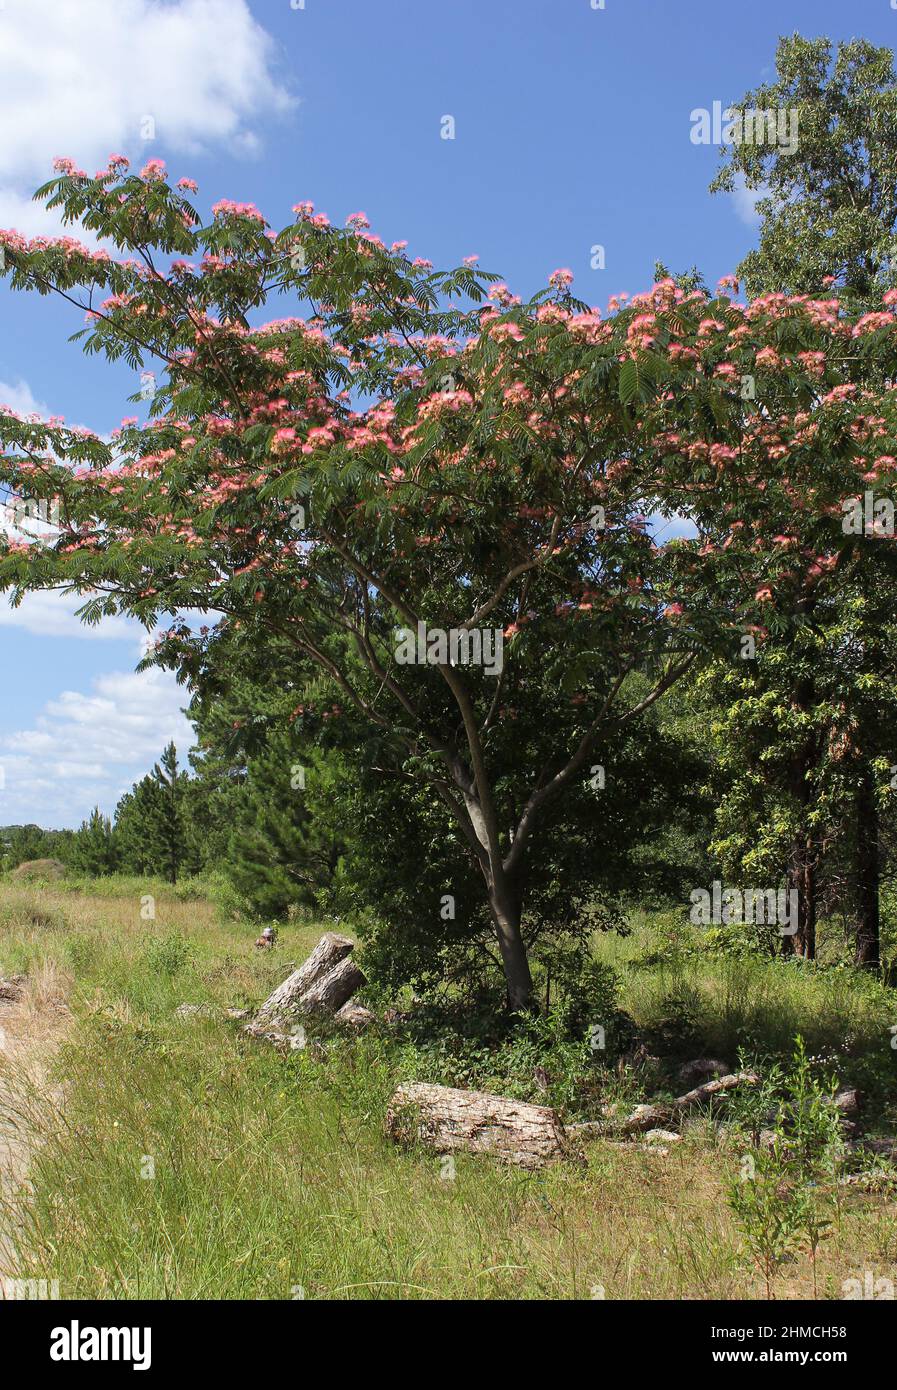 Persian Silk Tree in Bloom Growing in Rural East Texas Stock Photo